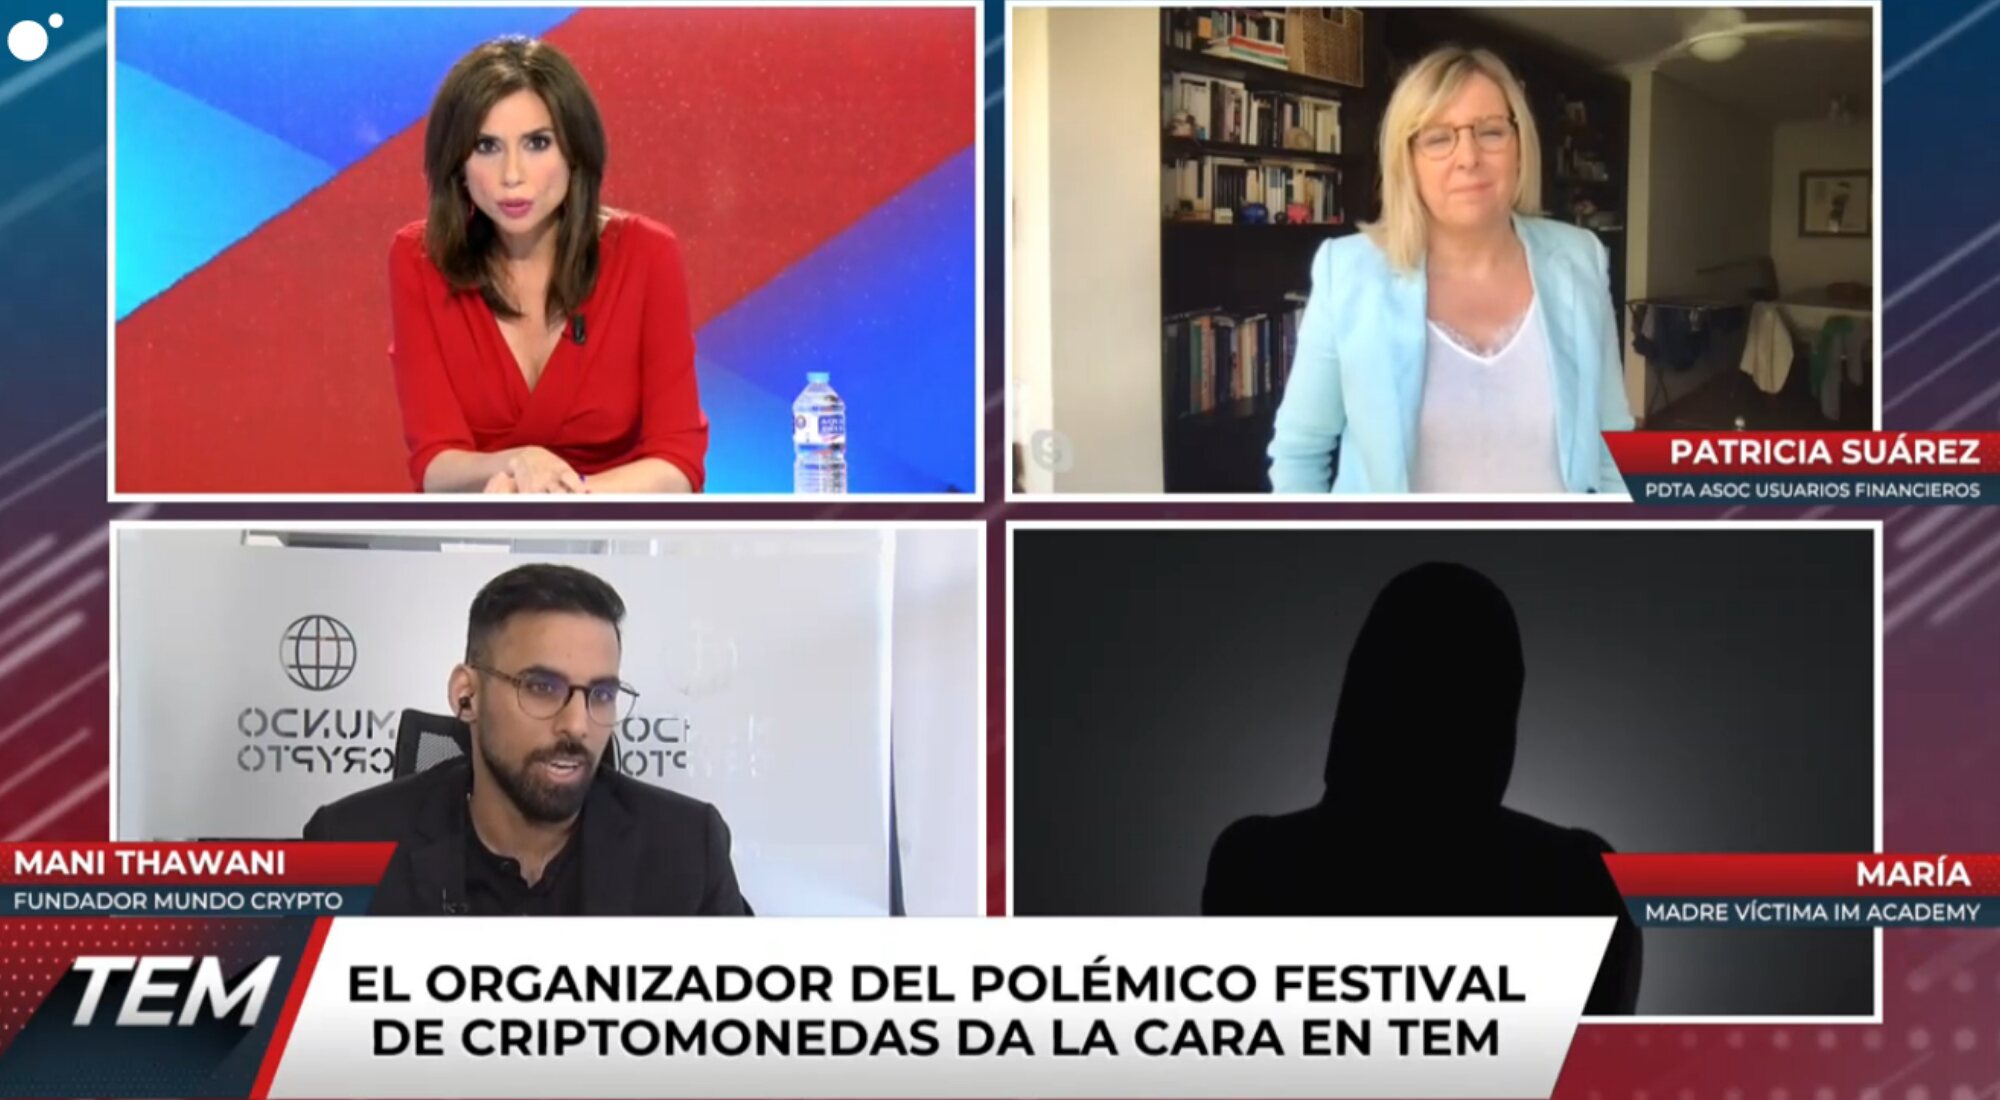 Marta Flich, Mani Thawaini, Patricia Suárez y María en 'Todo es mentira'